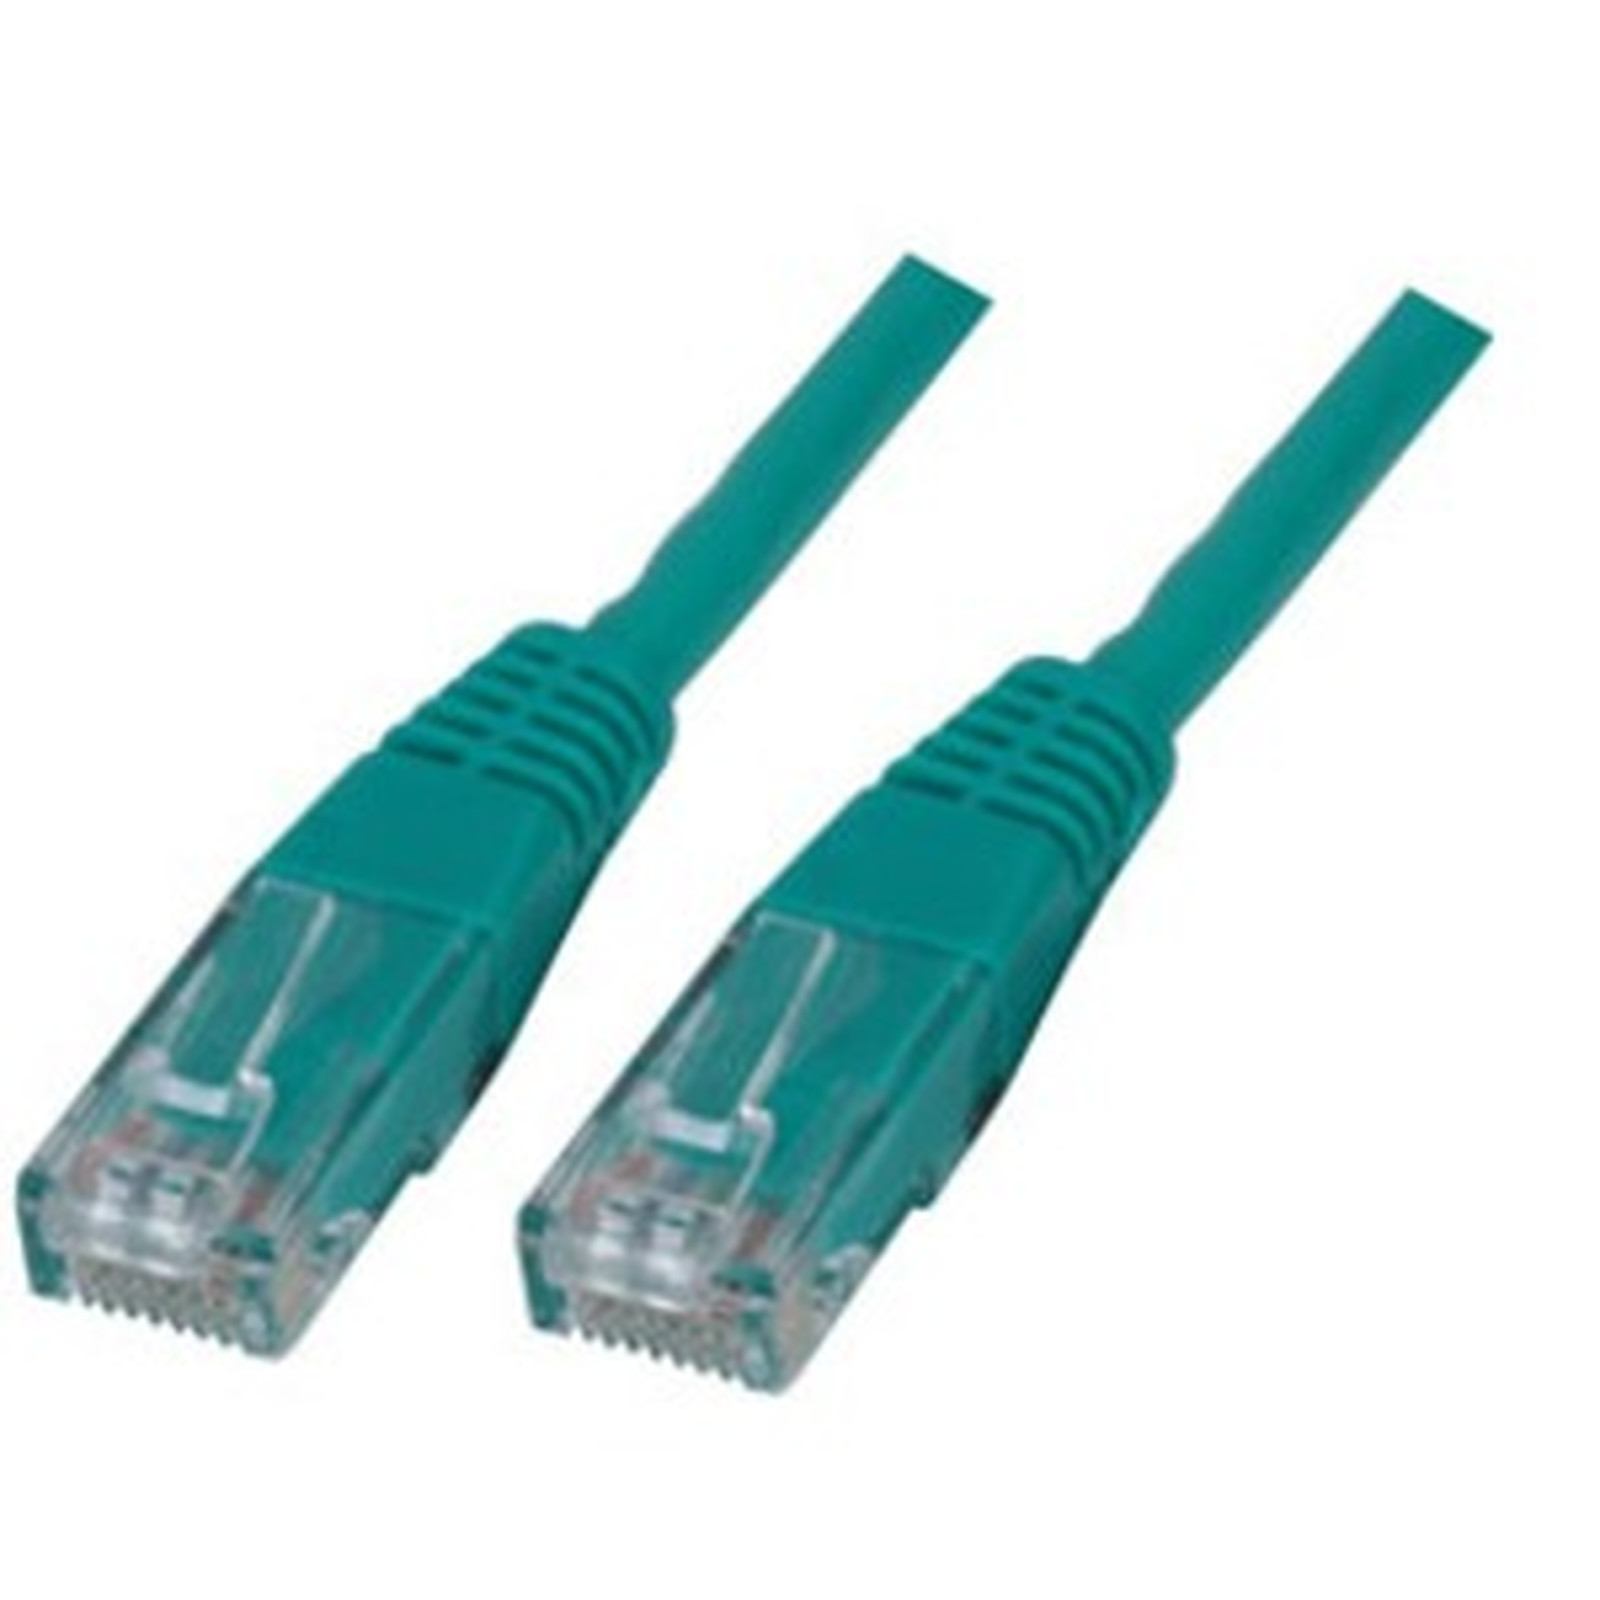 Cable RJ45 categorie 6 U/UTP 5 m (Vert) - Cable RJ45 Generique